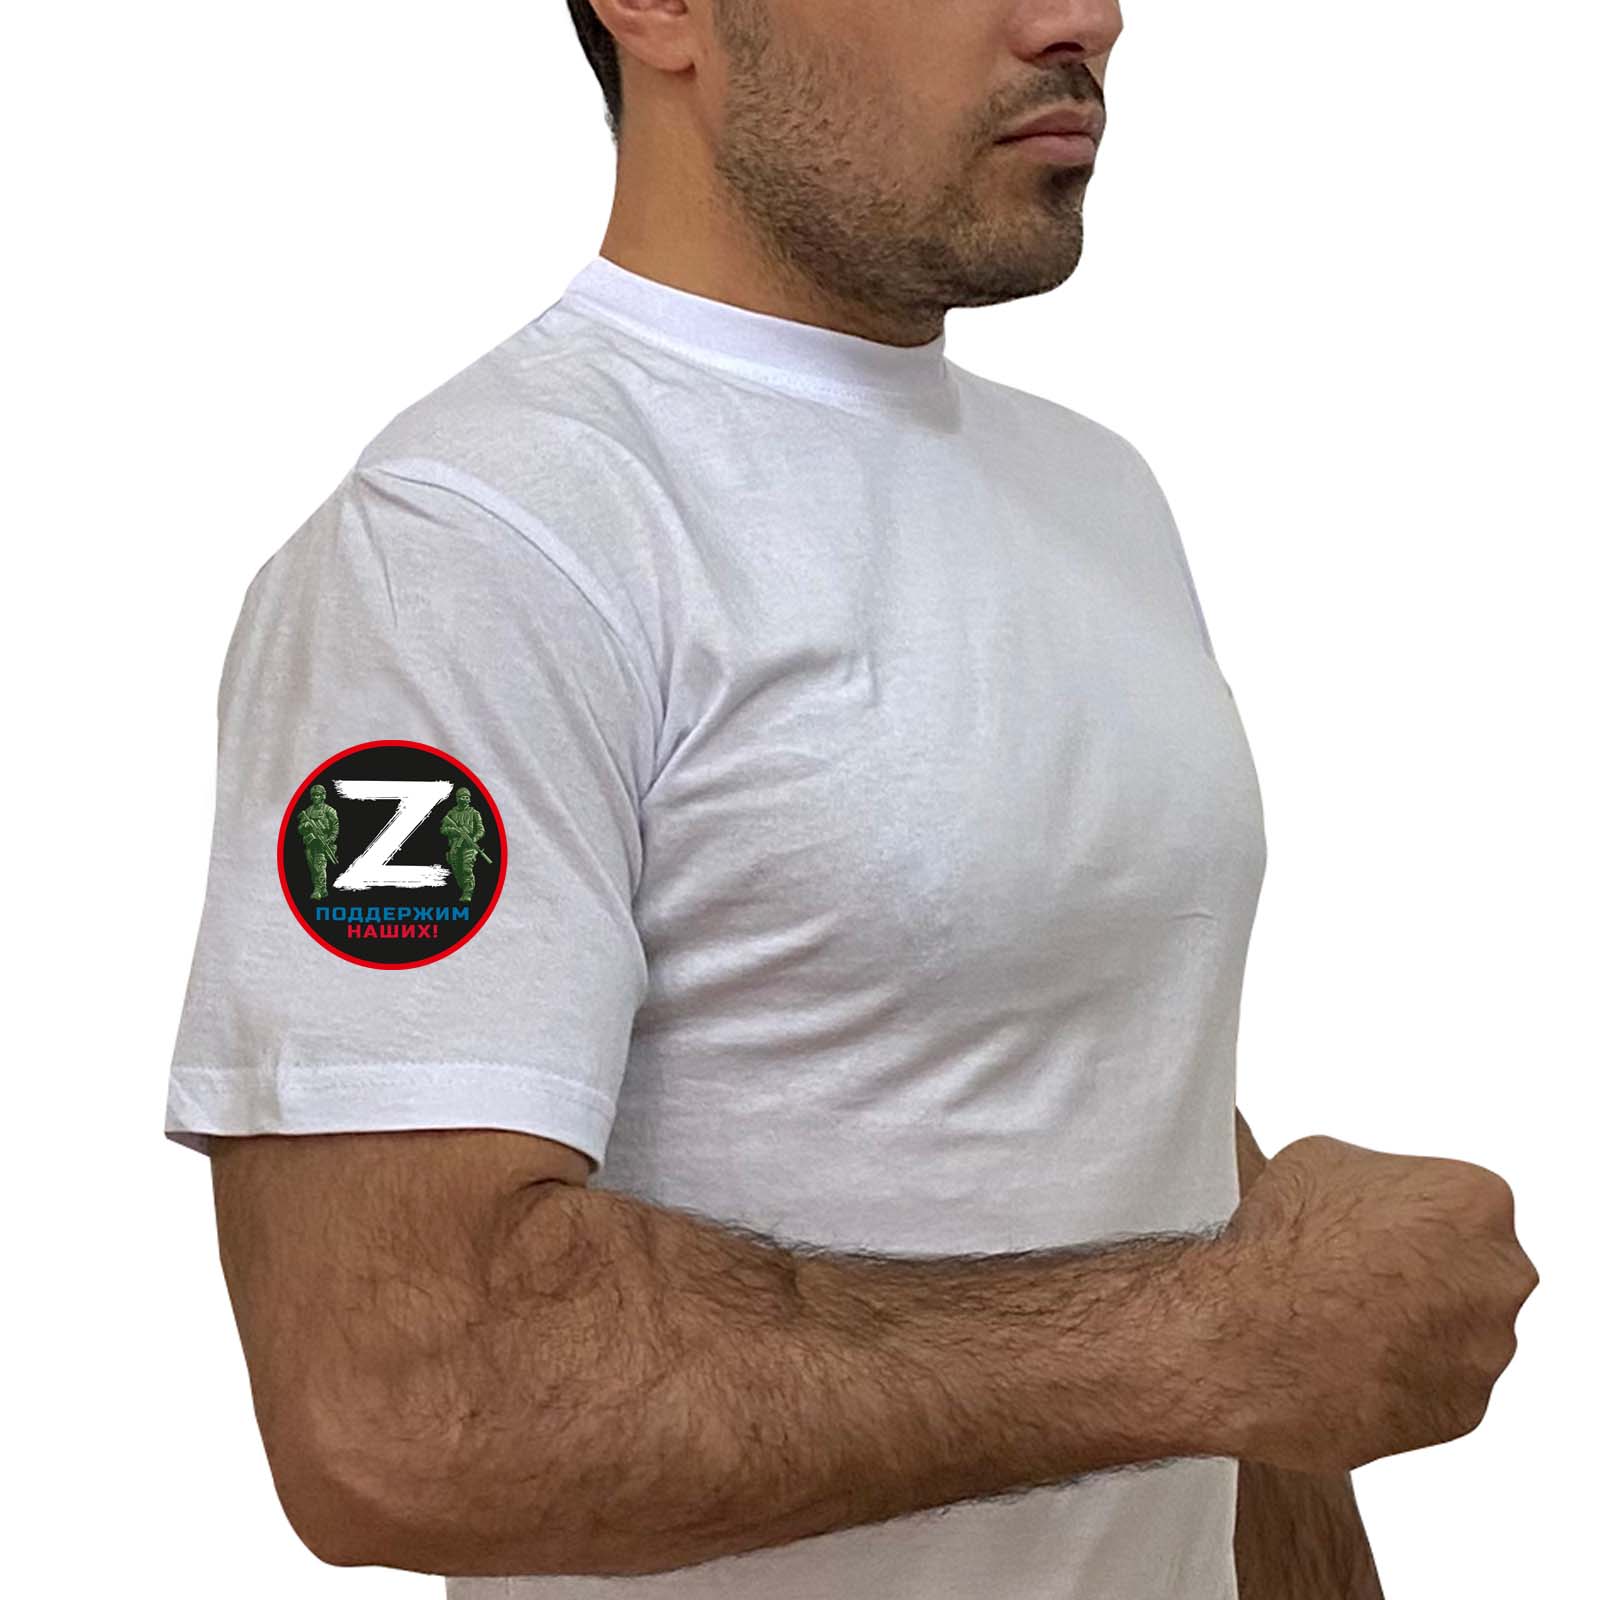 Купить белую футболку с терморансфером «Z» на рукаве